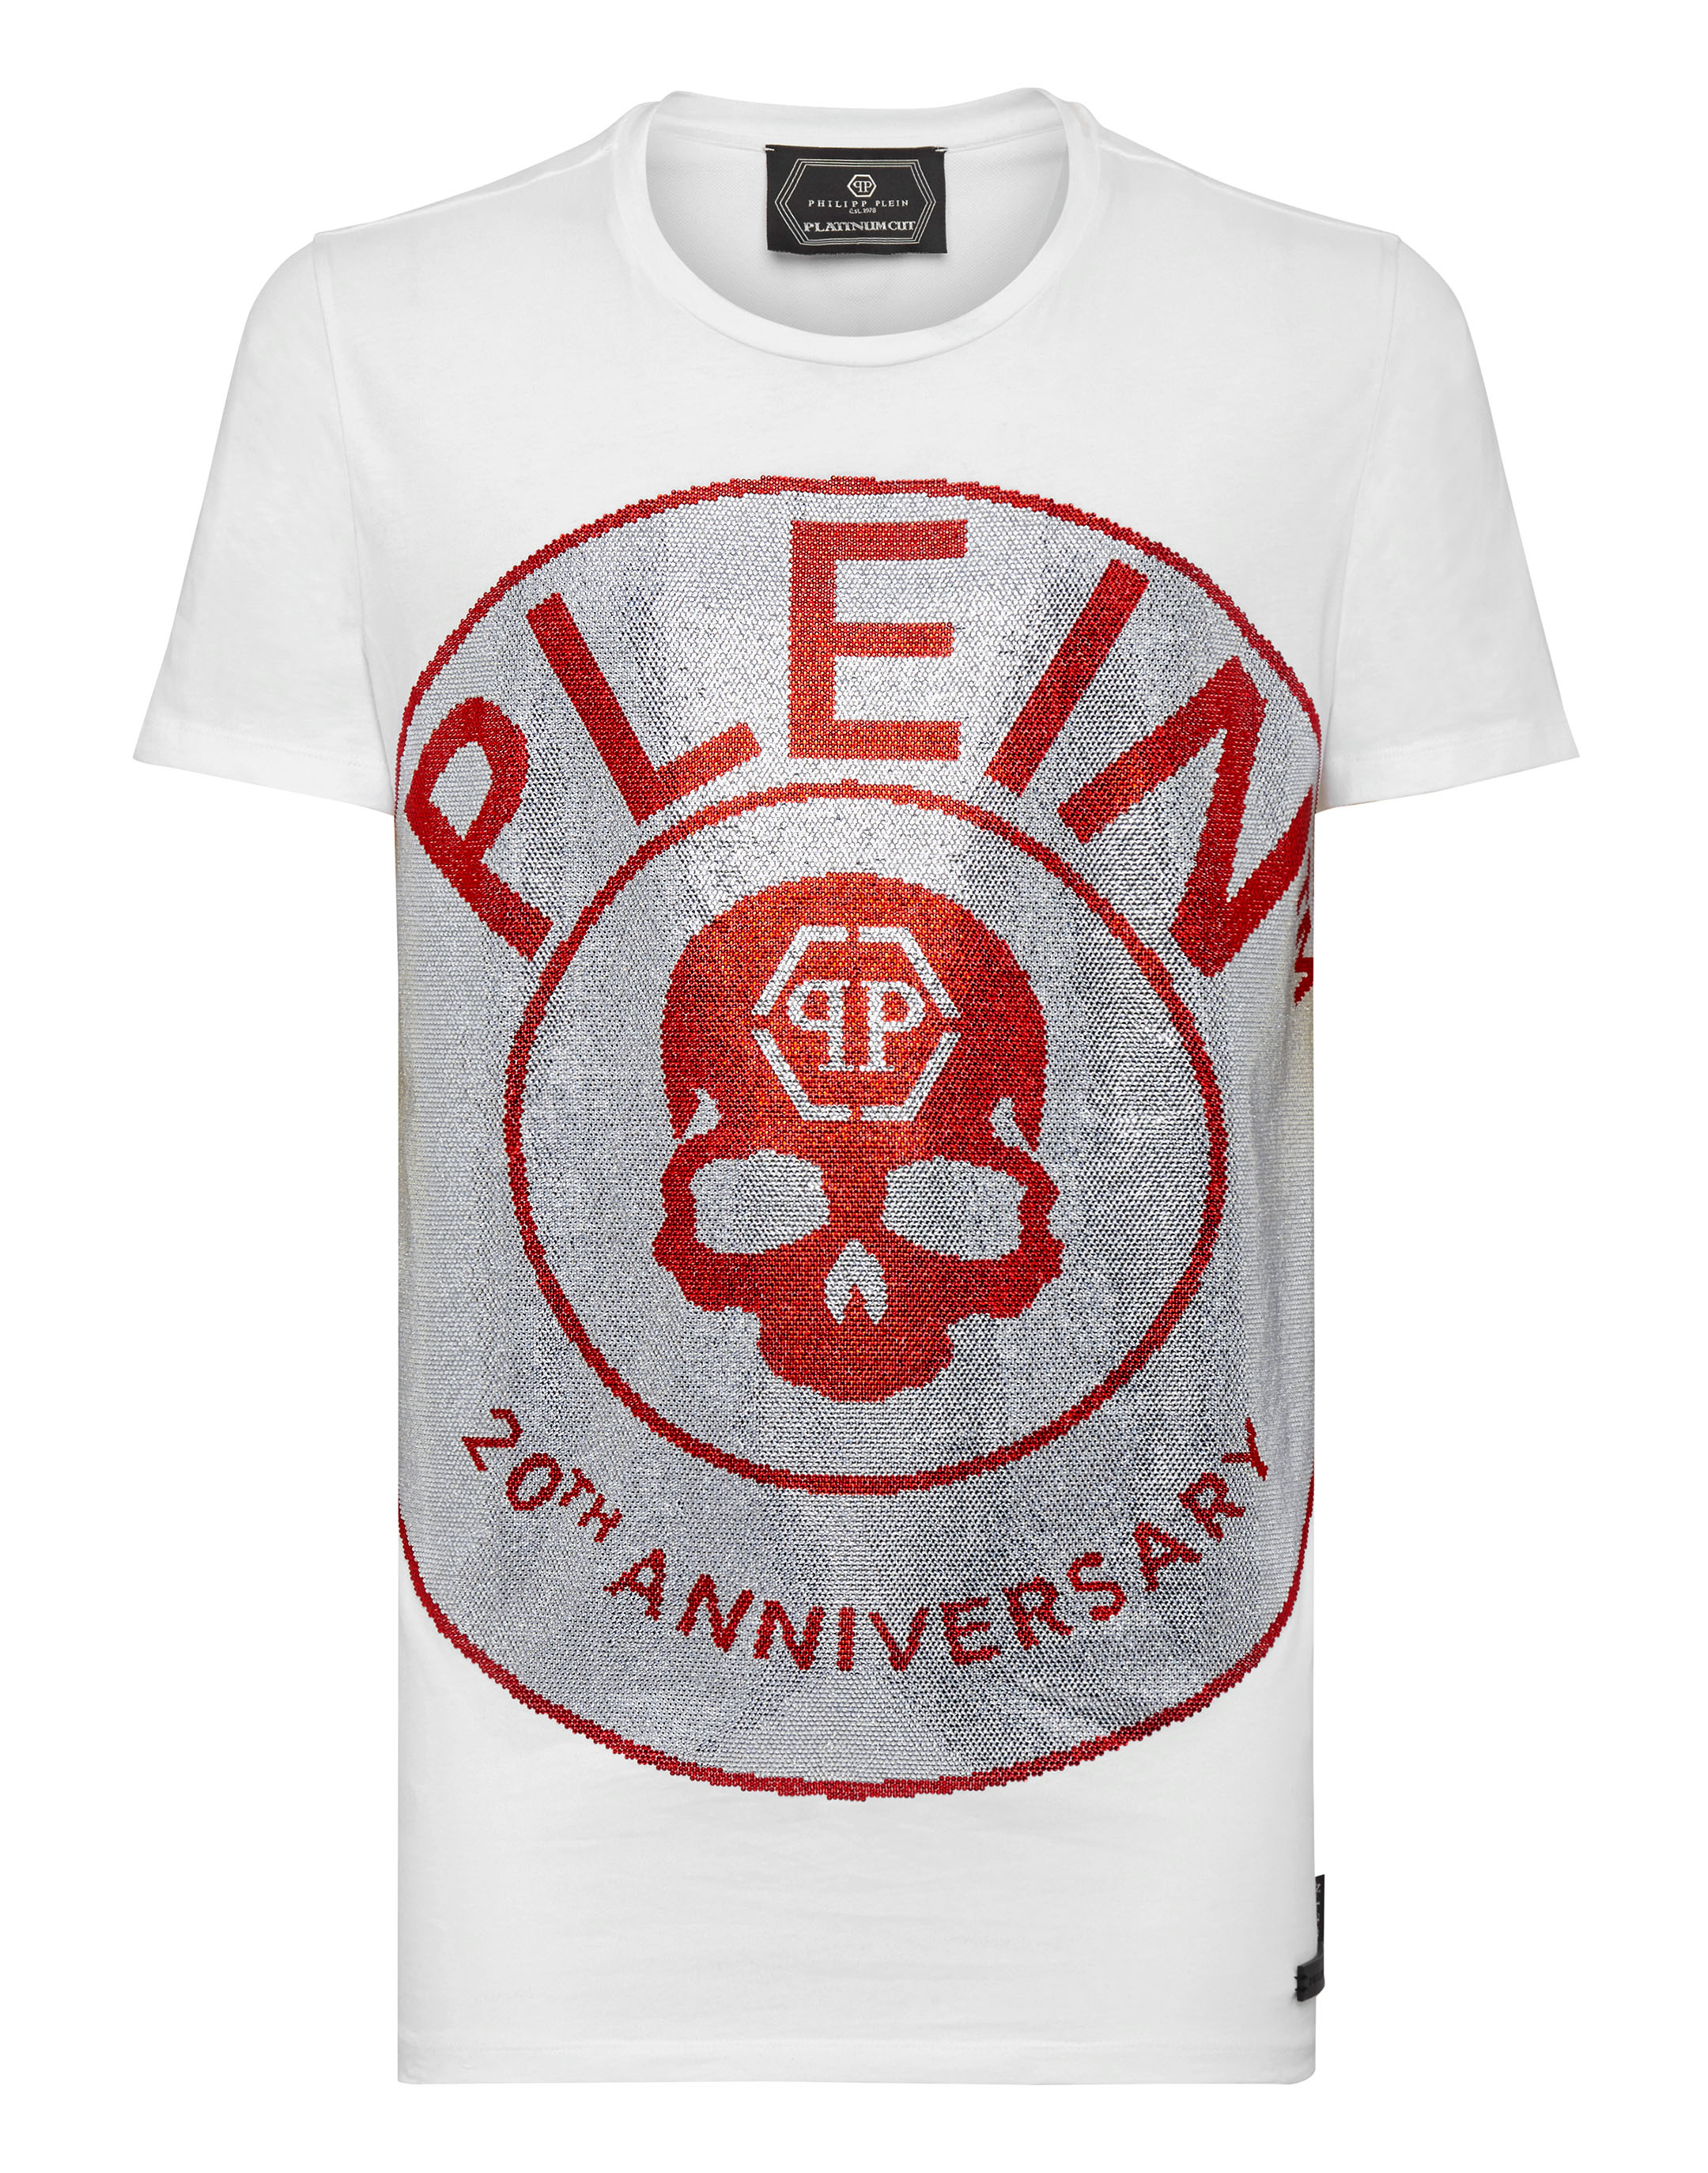 T-shirt Platinum Cut Round Neck Anniversary 20th | Philipp Plein Outlet